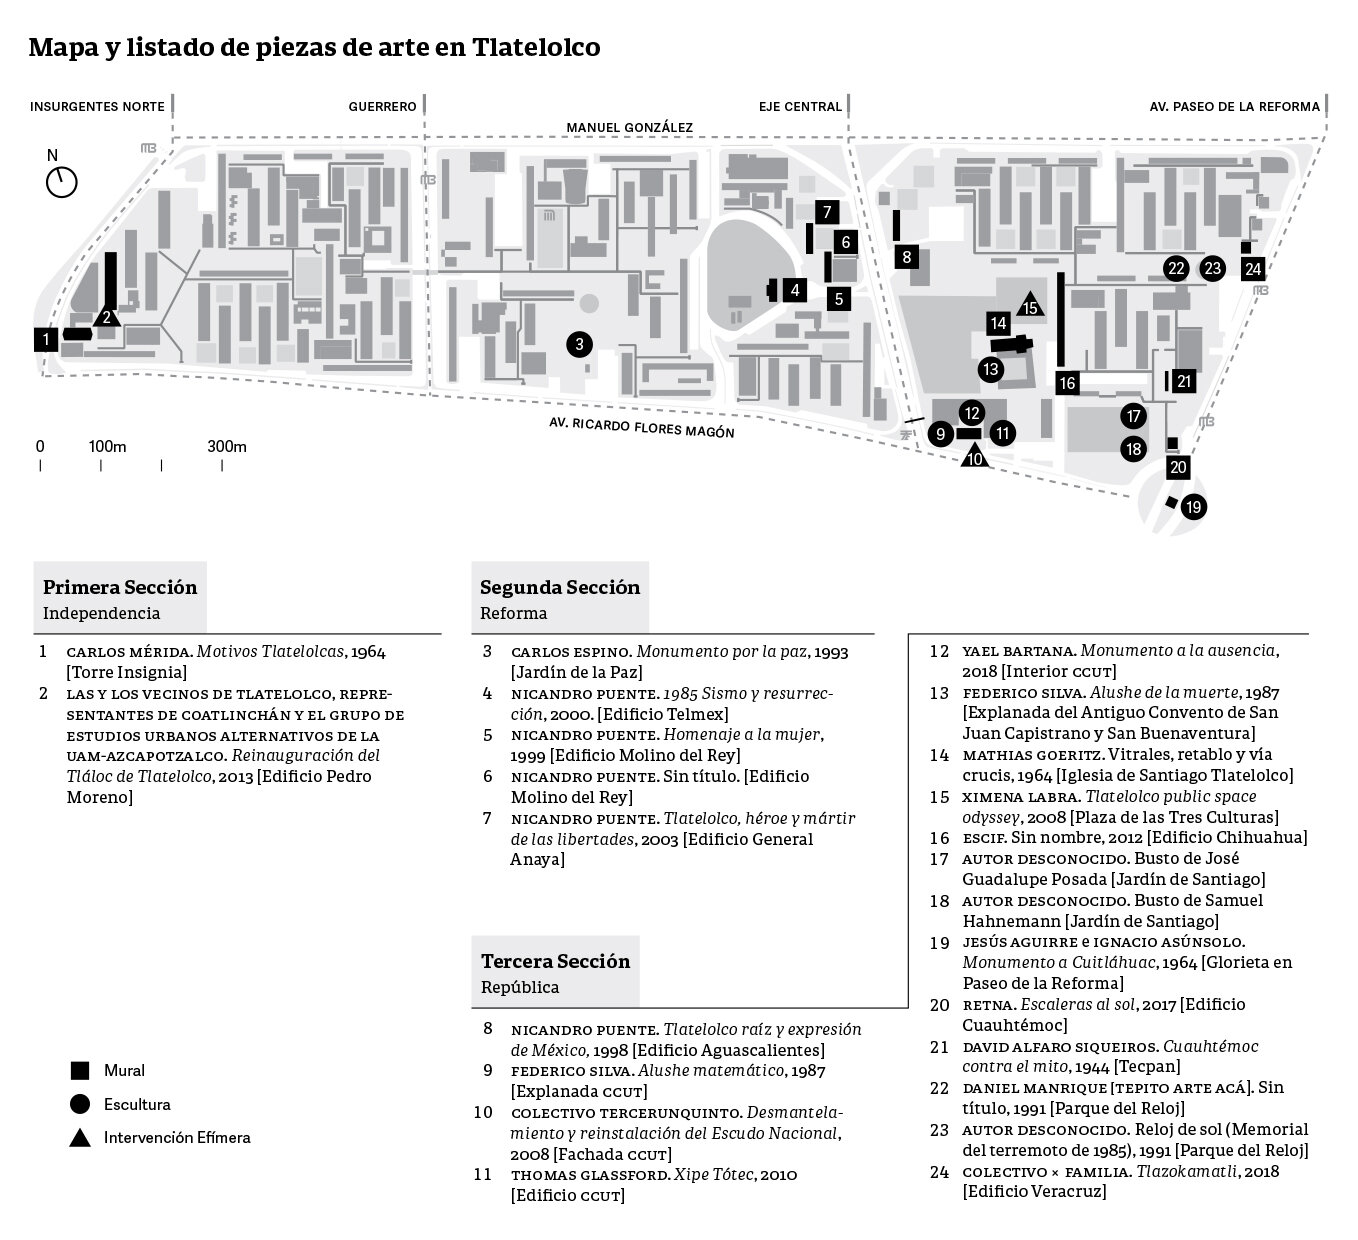 Mapa y listado de piezas de arte en Tlatelolco.jpg